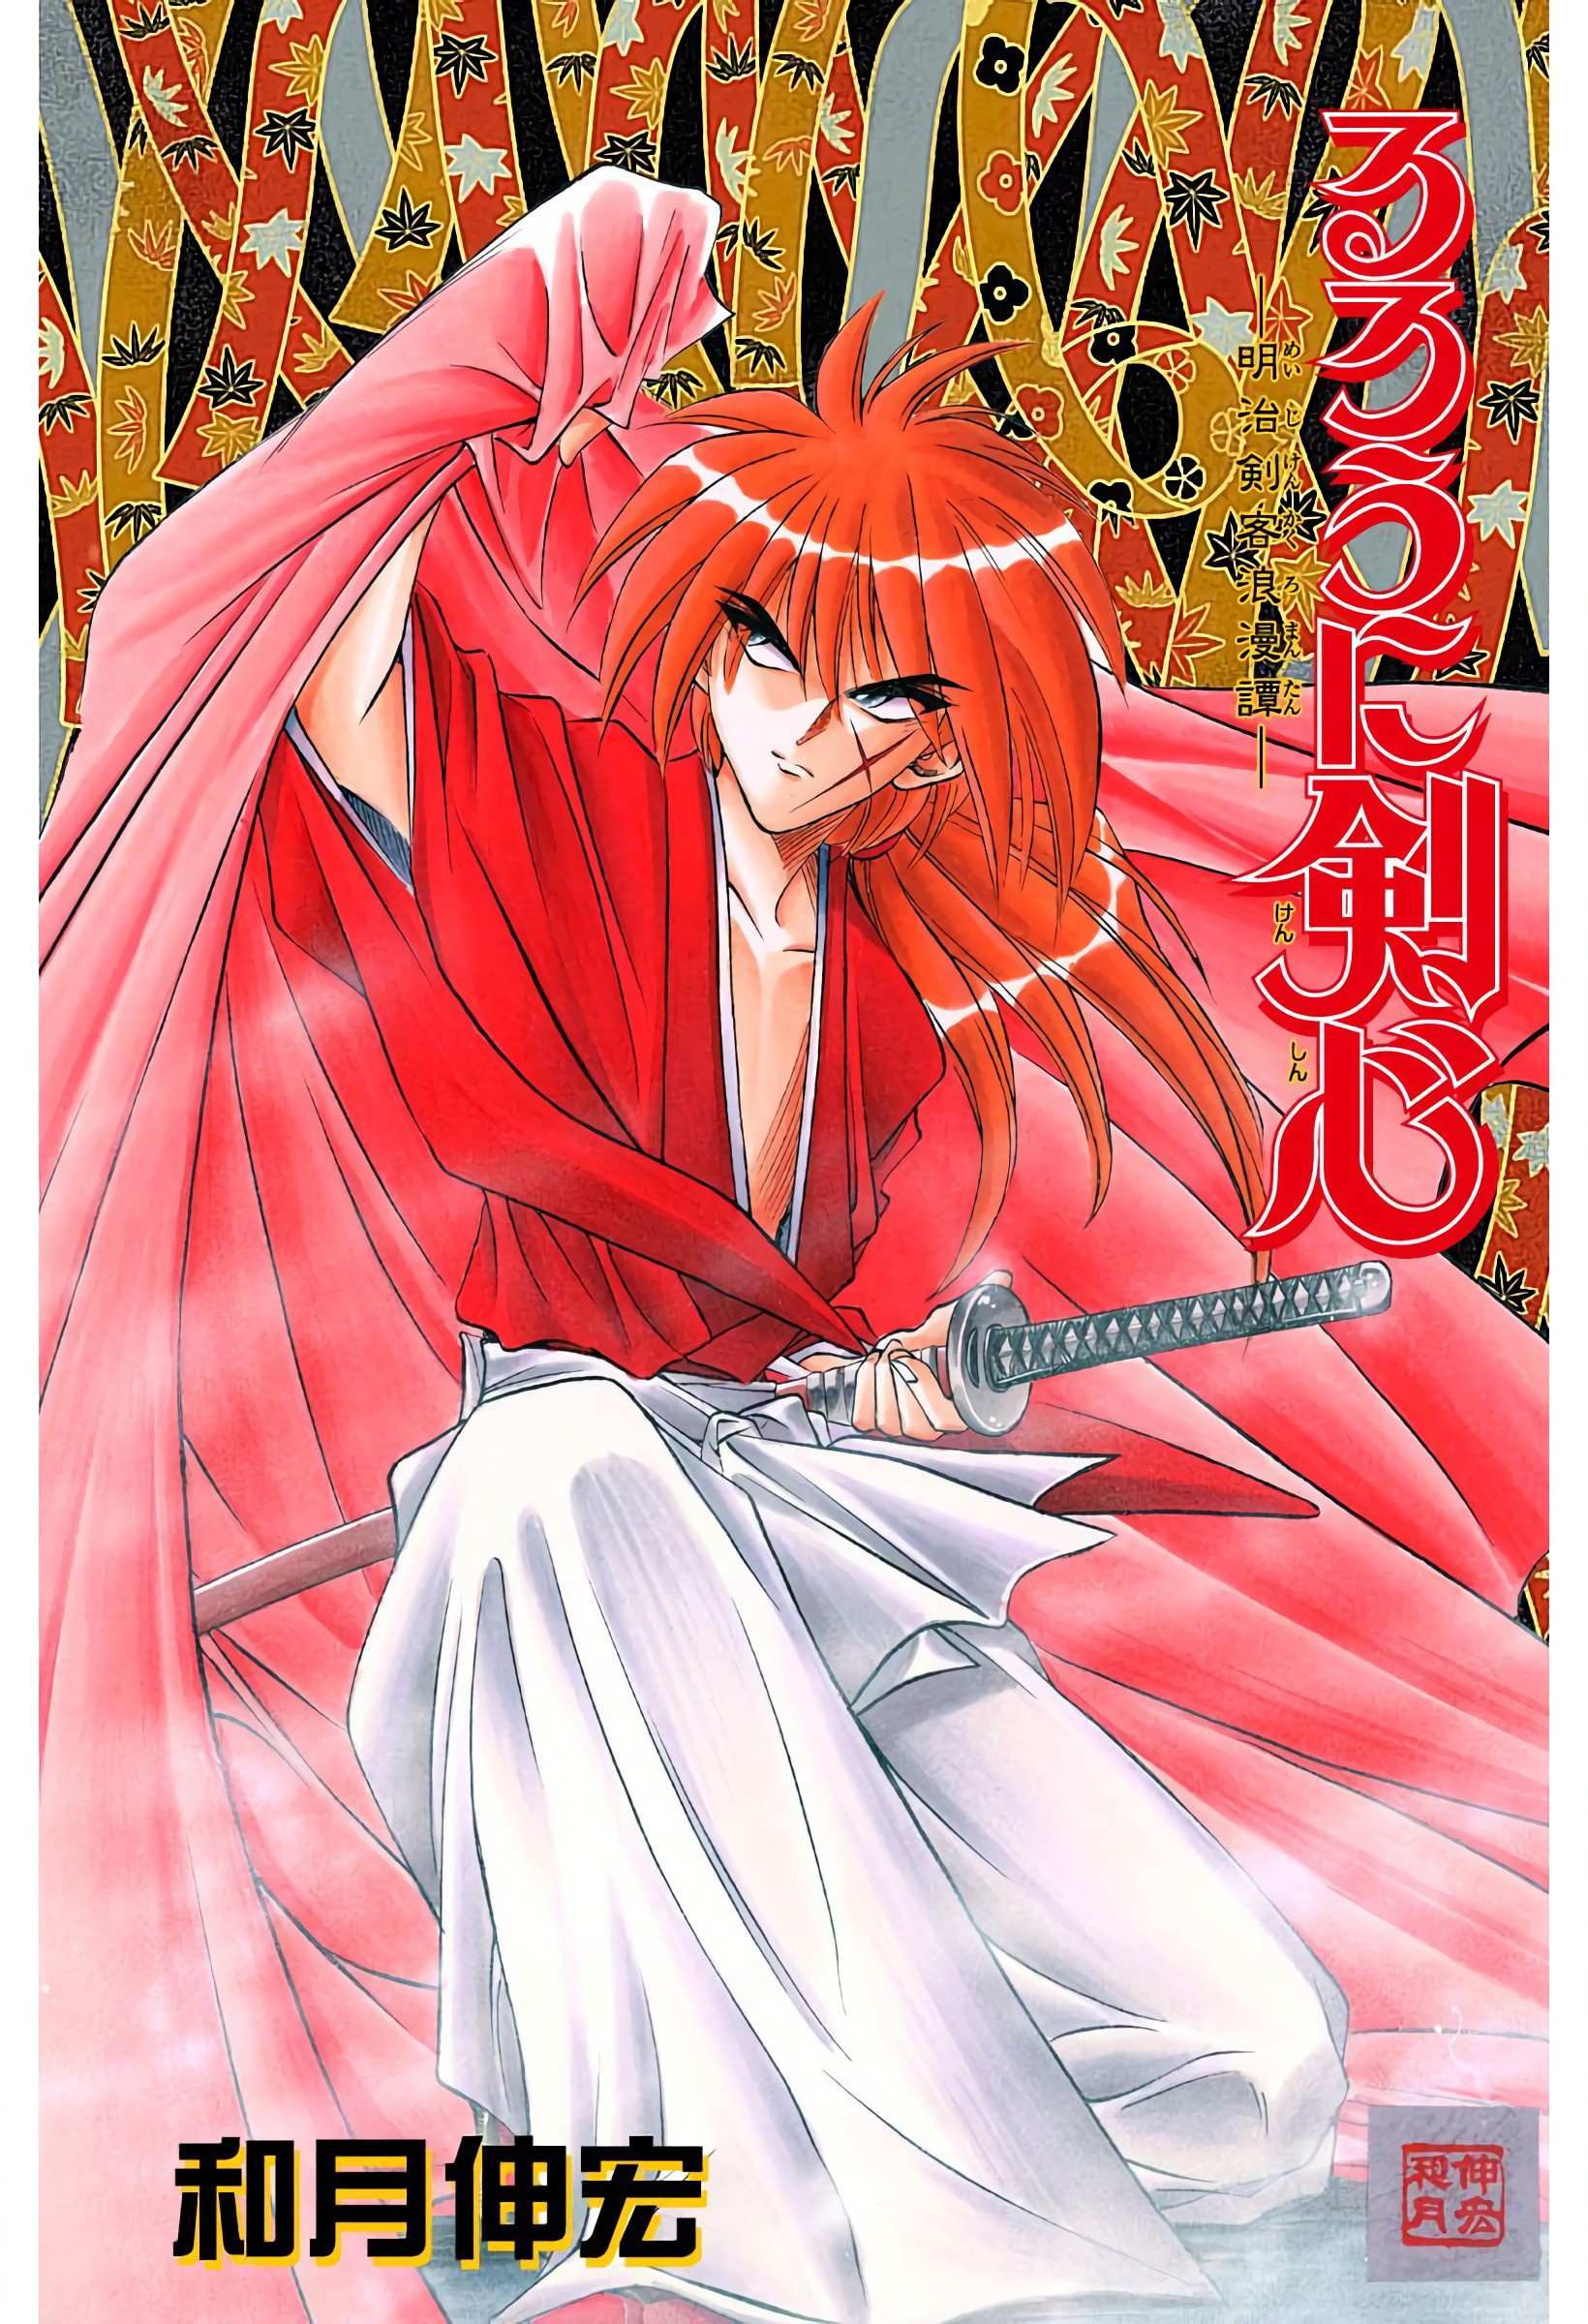 Rurouni Kenshin: Meiji Kenkaku Romantan - Digital Colored - chapter 40 - #1